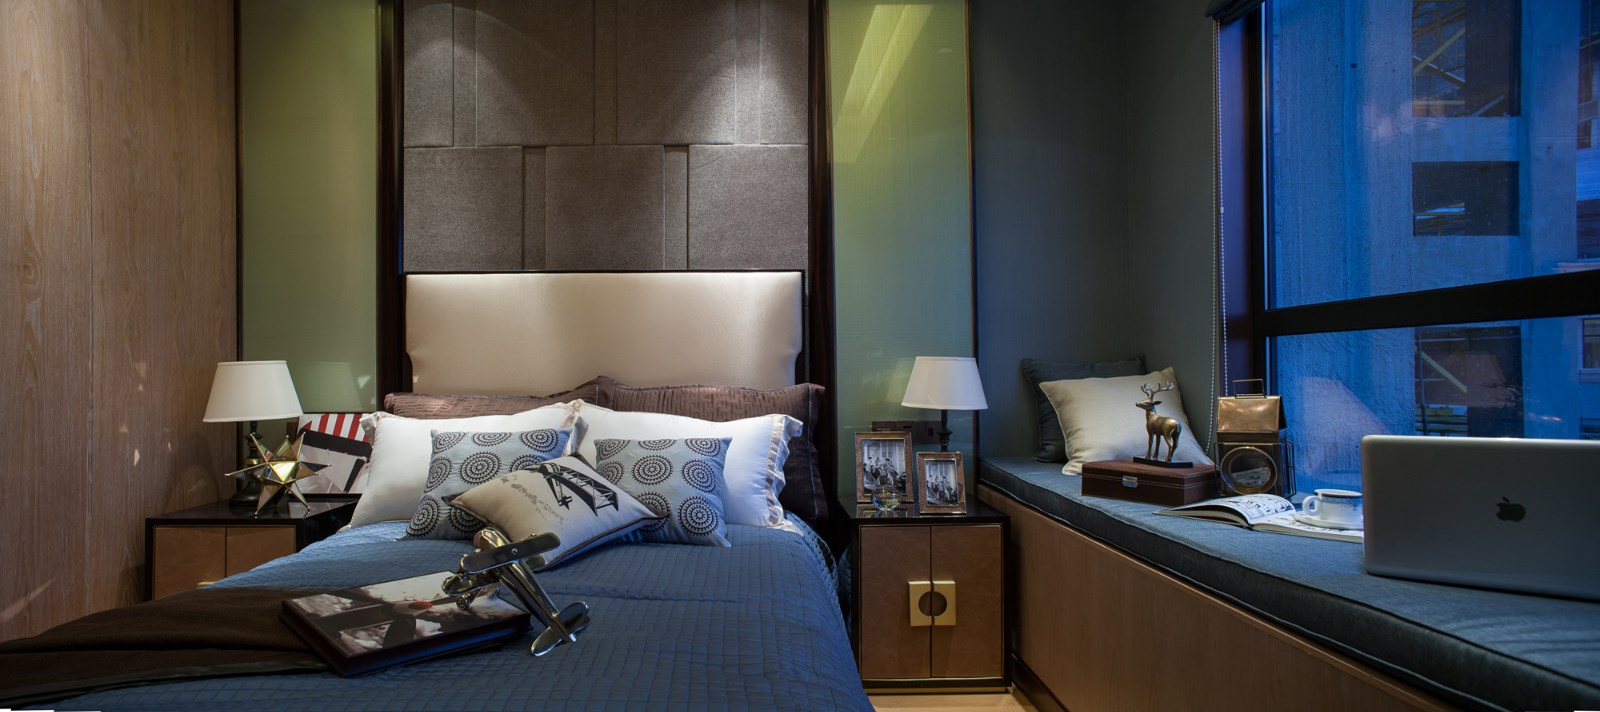 新古典 三居 大户型 复式 跃层 别墅 80后 小资 卧室图片来自高度国际姚吉智在158平米古典风无法低调的高雅的分享